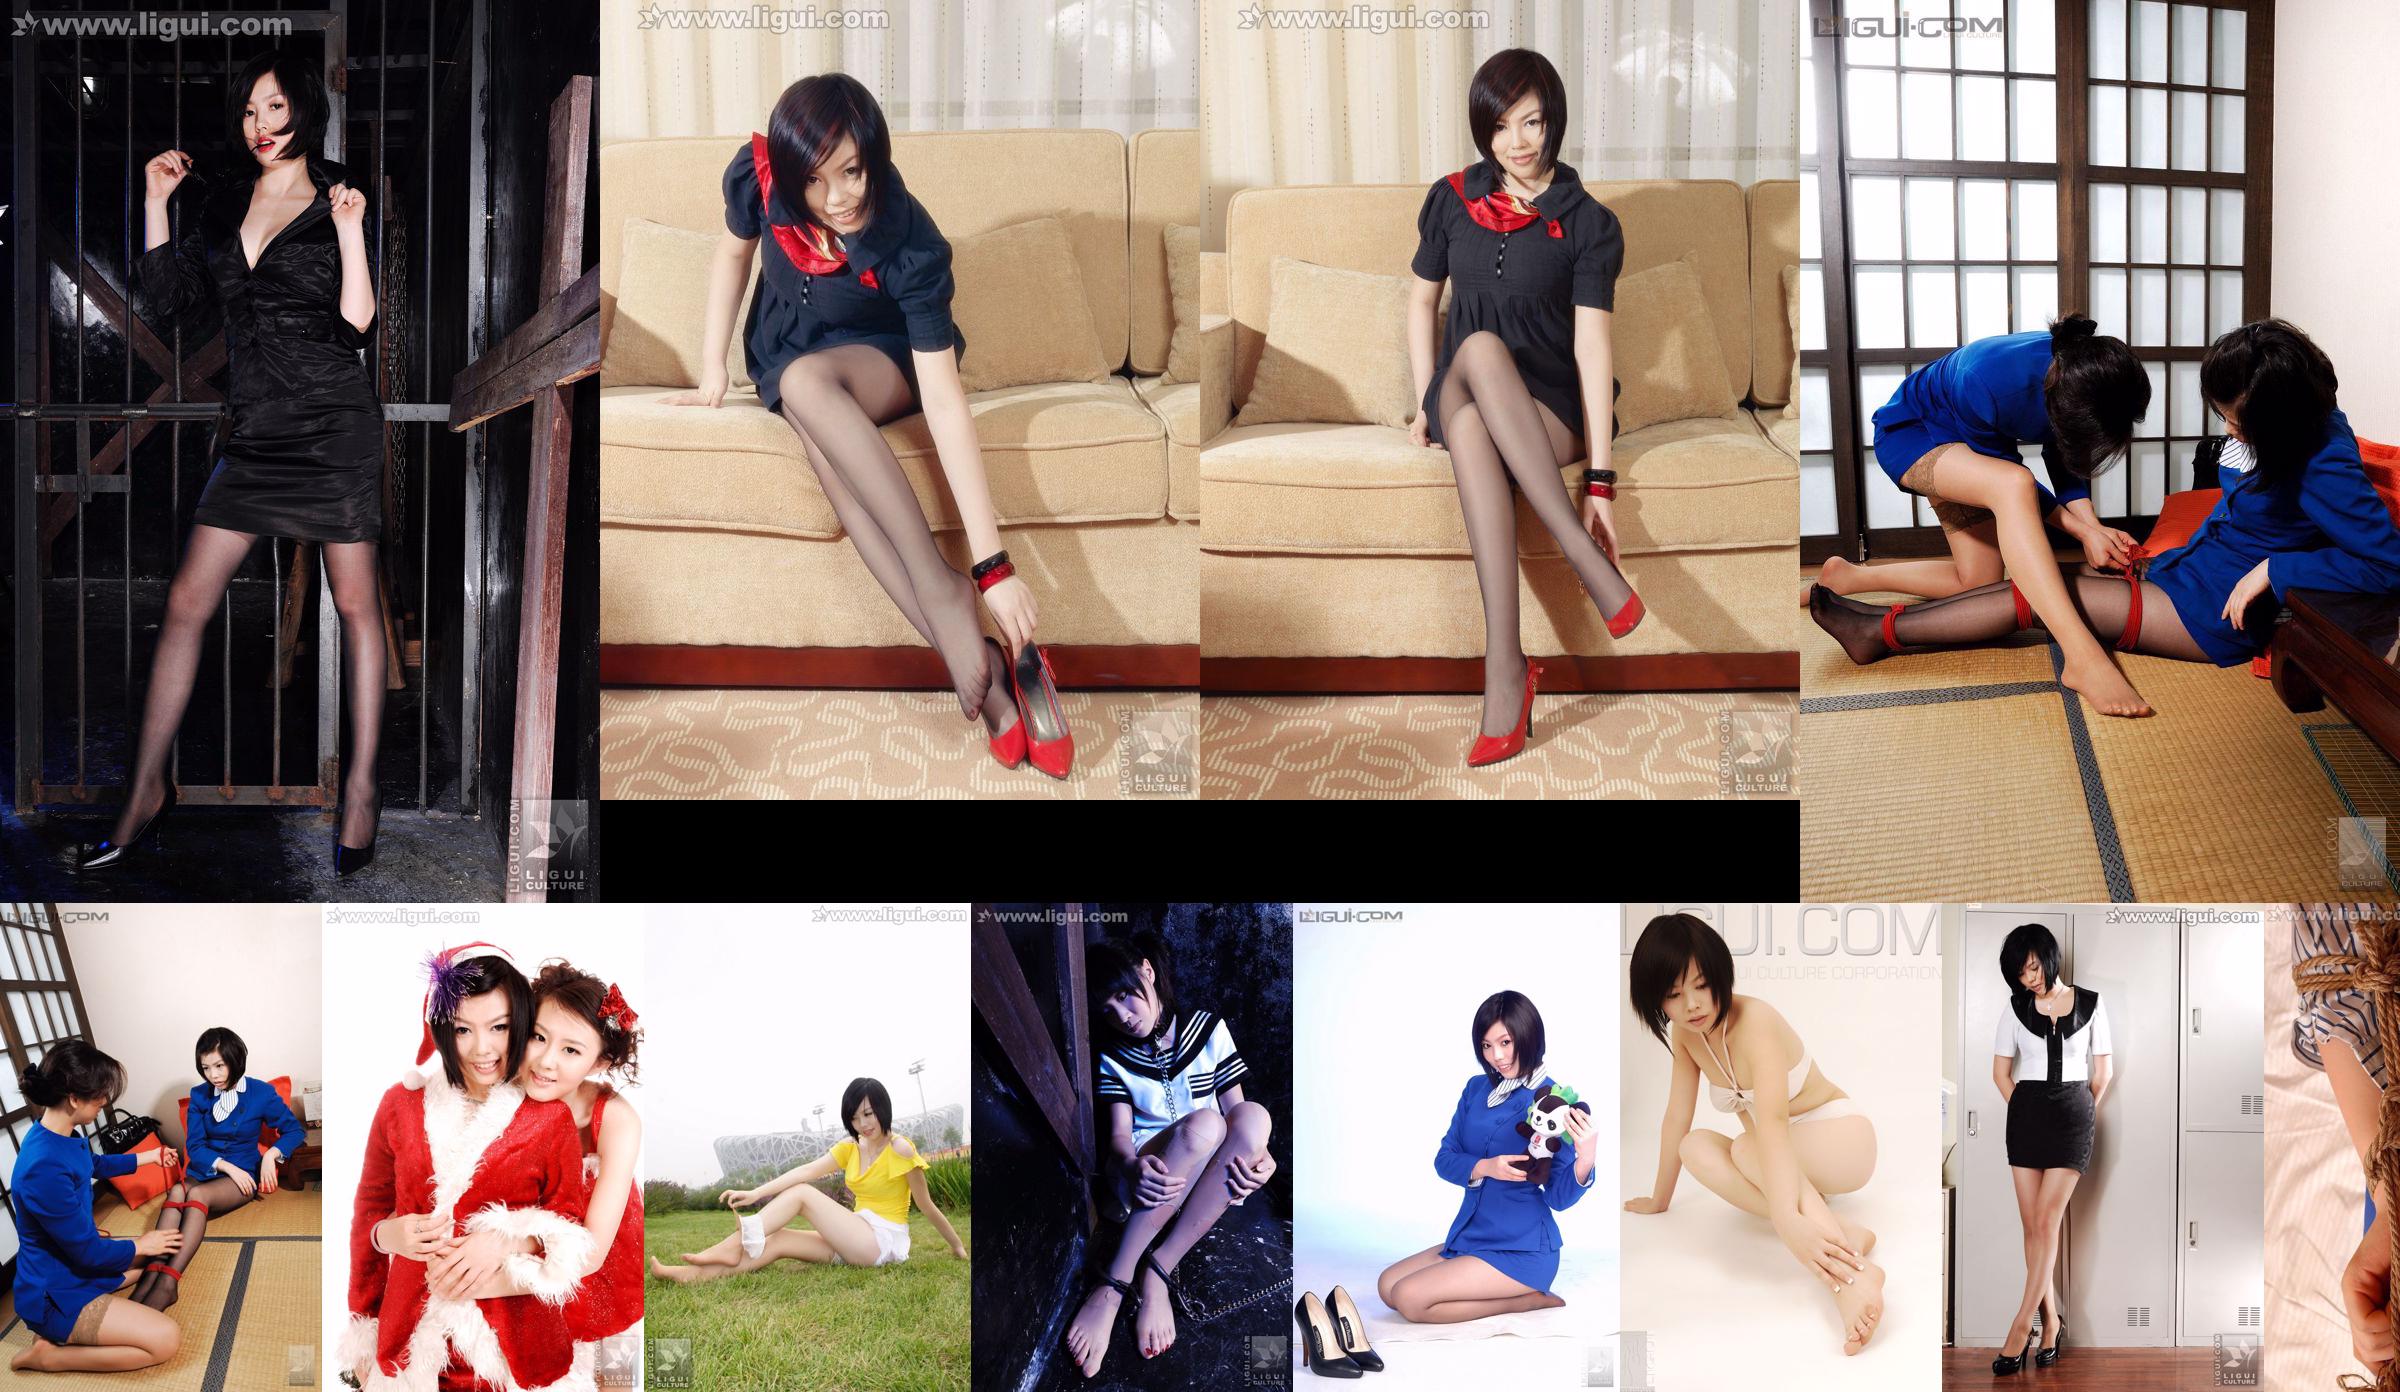 Người mẫu Muzi và Yumi "Nghệ thuật buộc dây đồng phục" [Ligui Meishu LiGui] Hình ảnh về bàn chân lụa No.10fe4f Trang 5